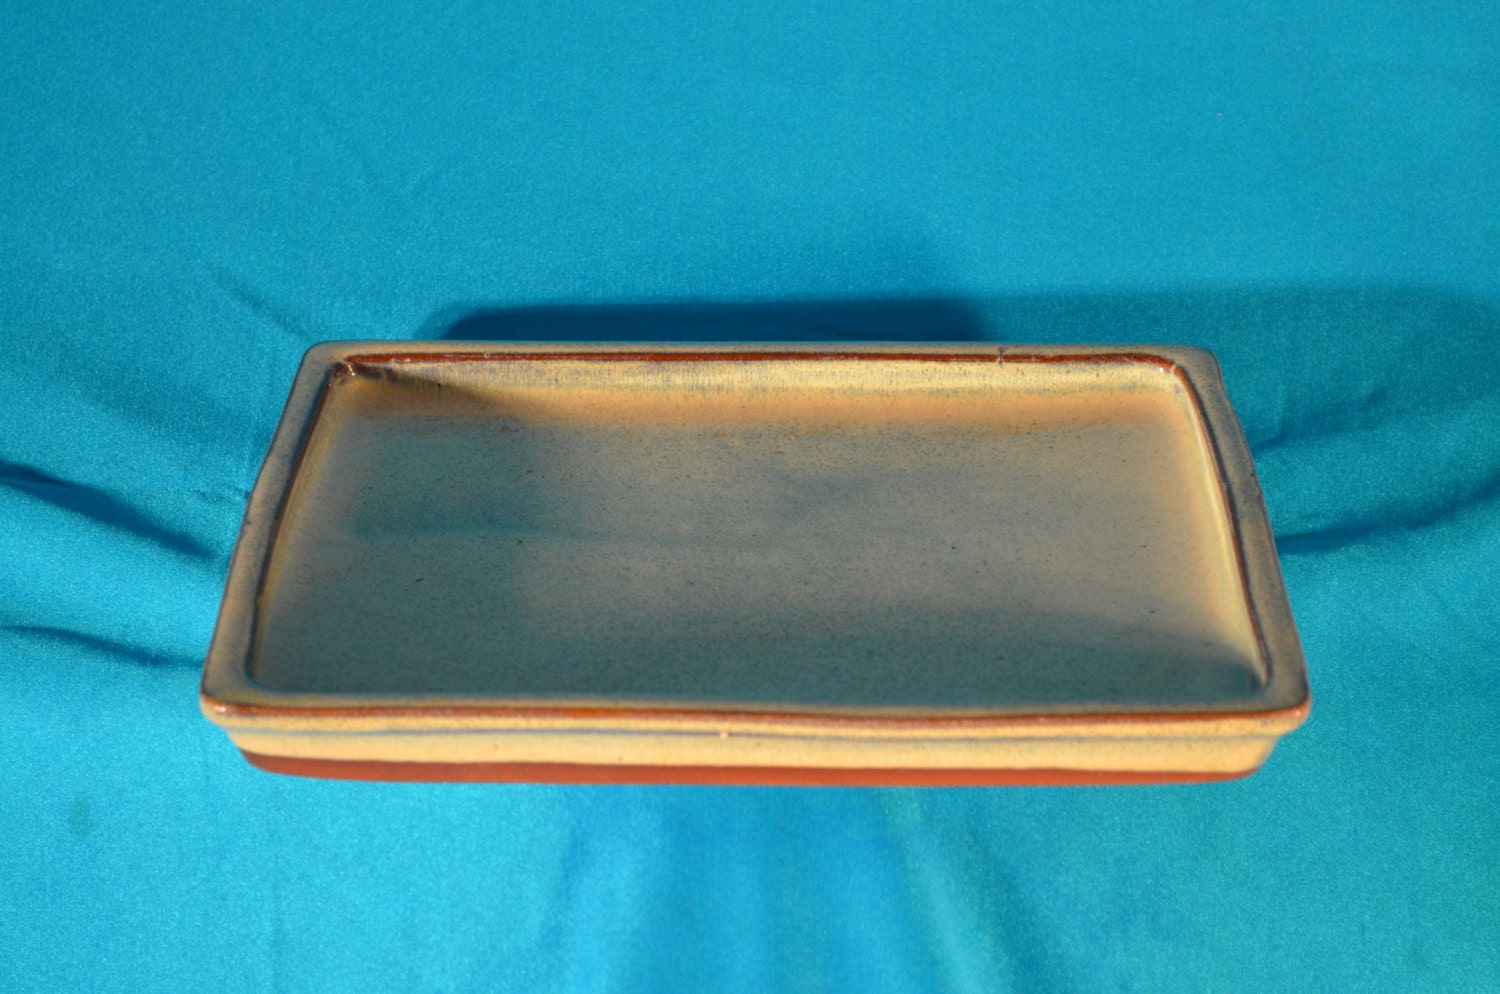  Bonsai  pot  tray  ceramic bonsai  humidity  tray  10 beige